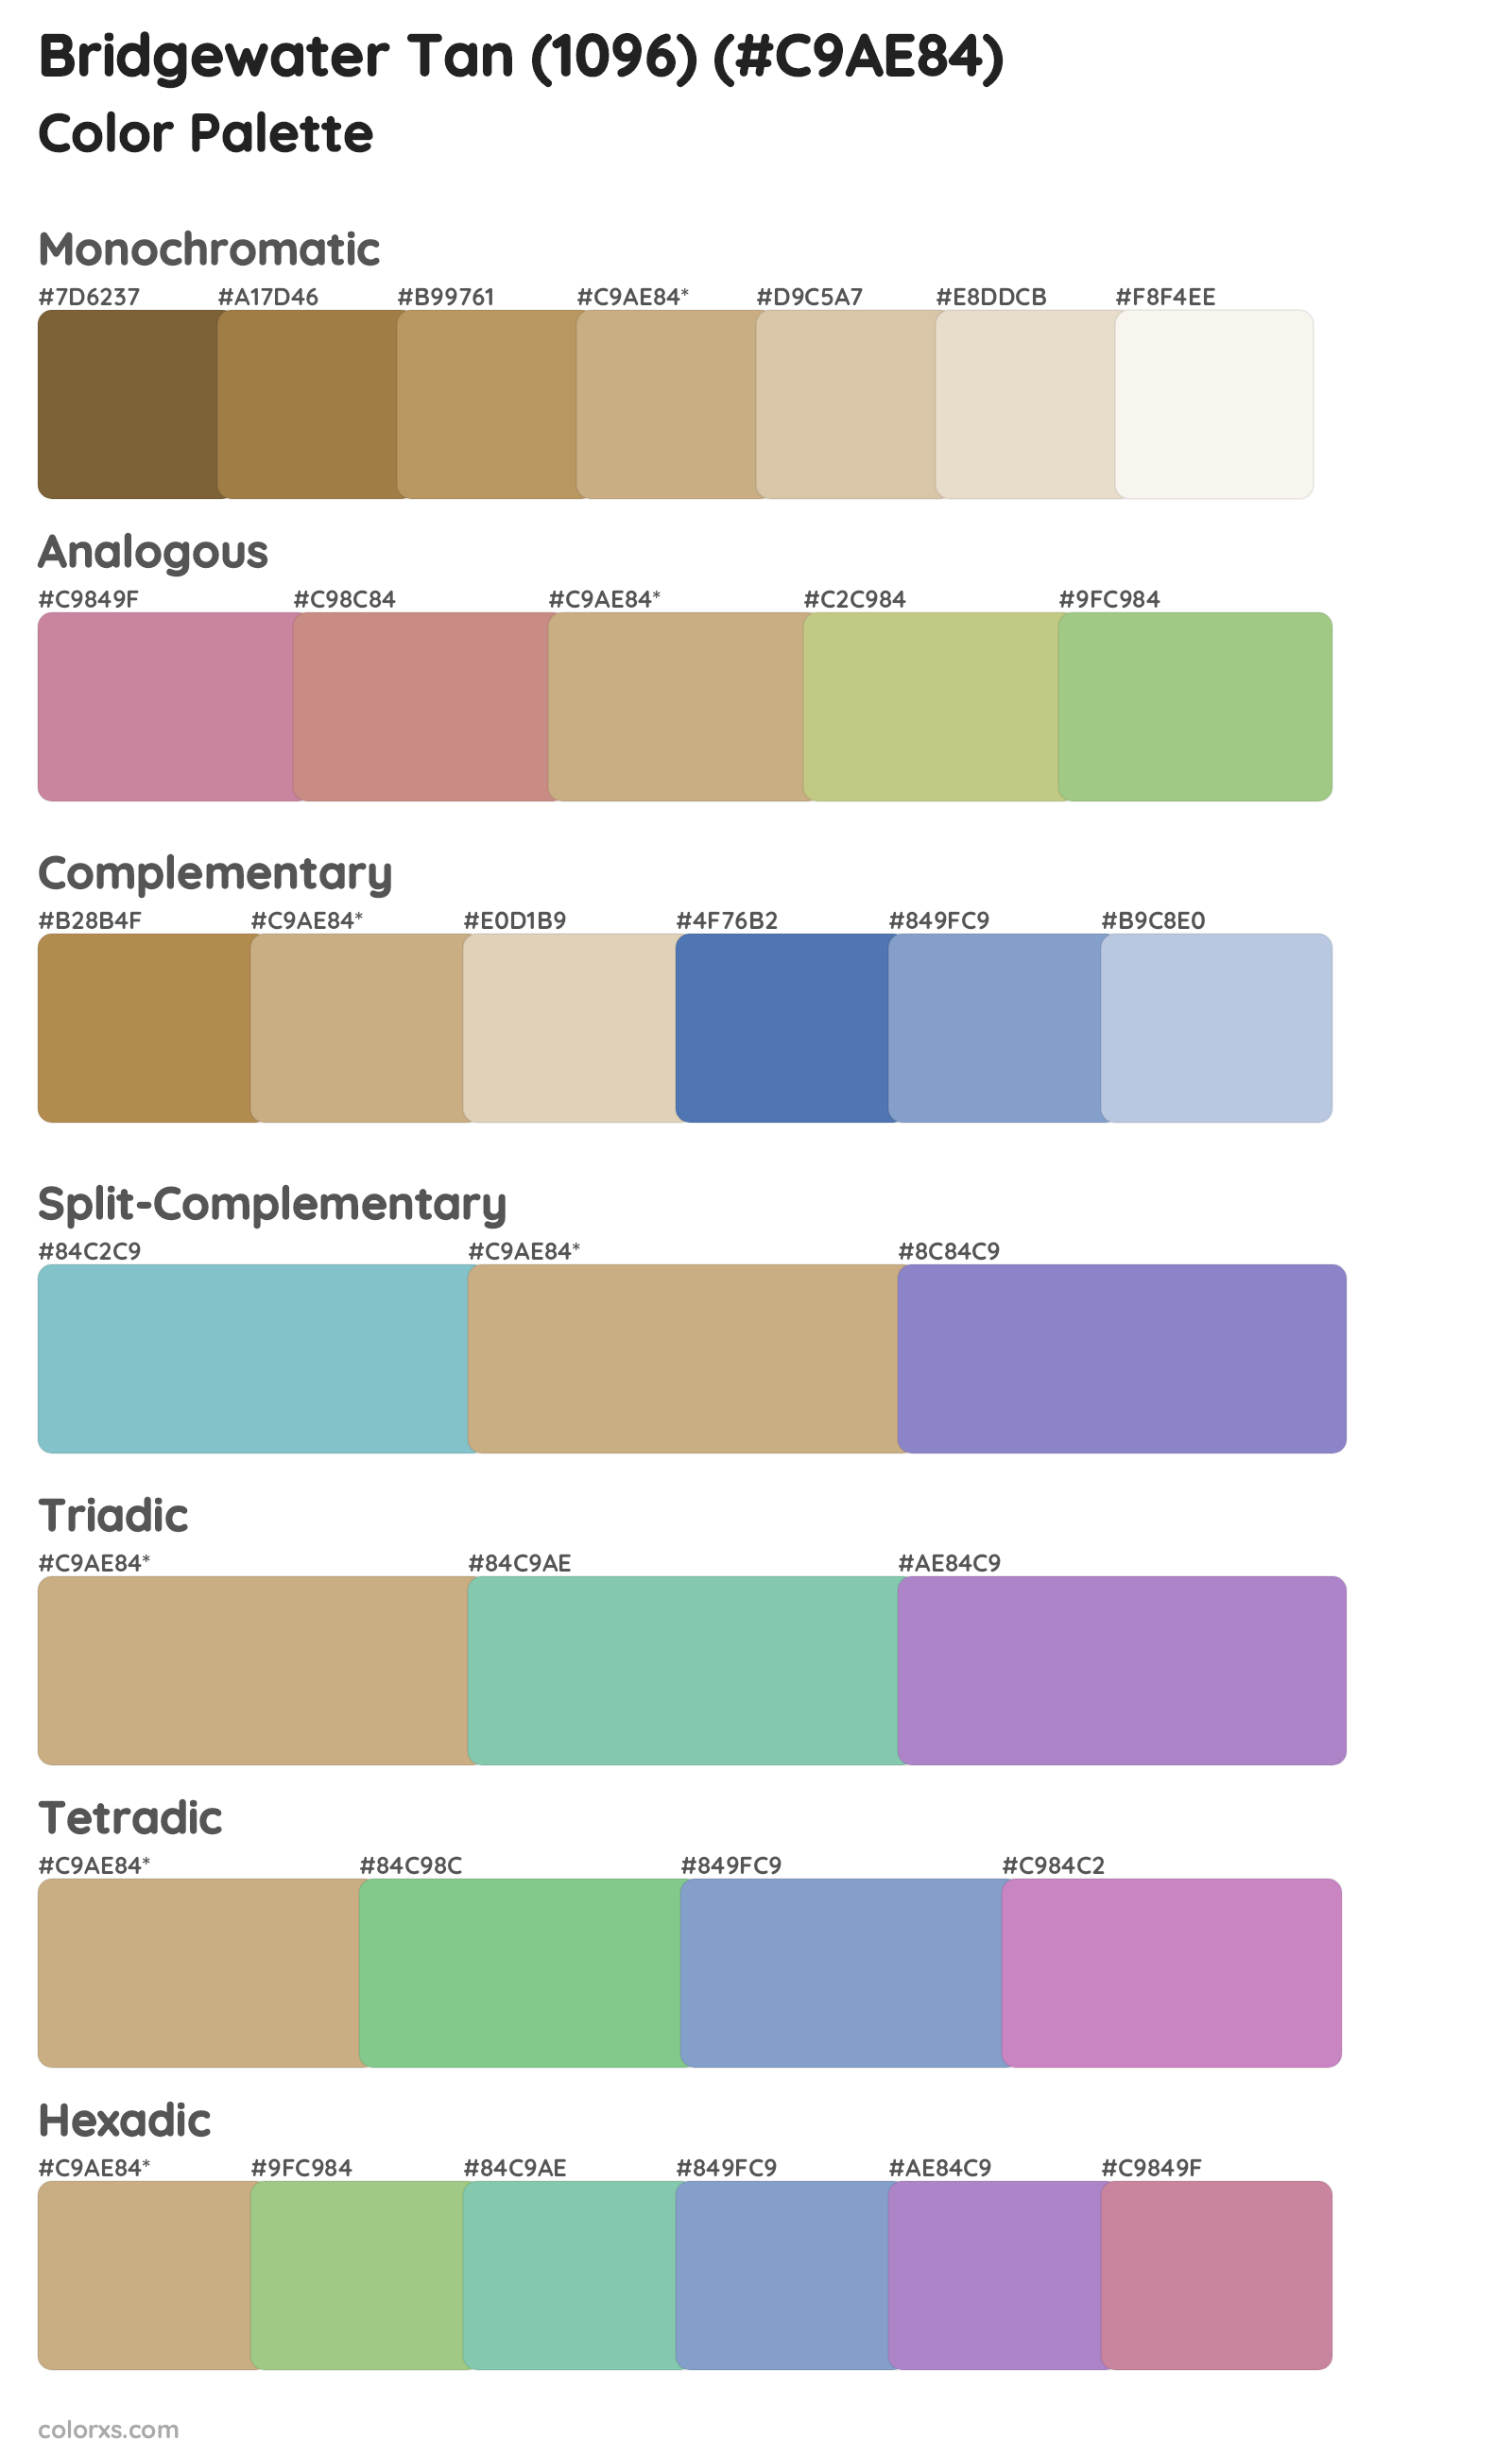 Bridgewater Tan (1096) Color Scheme Palettes